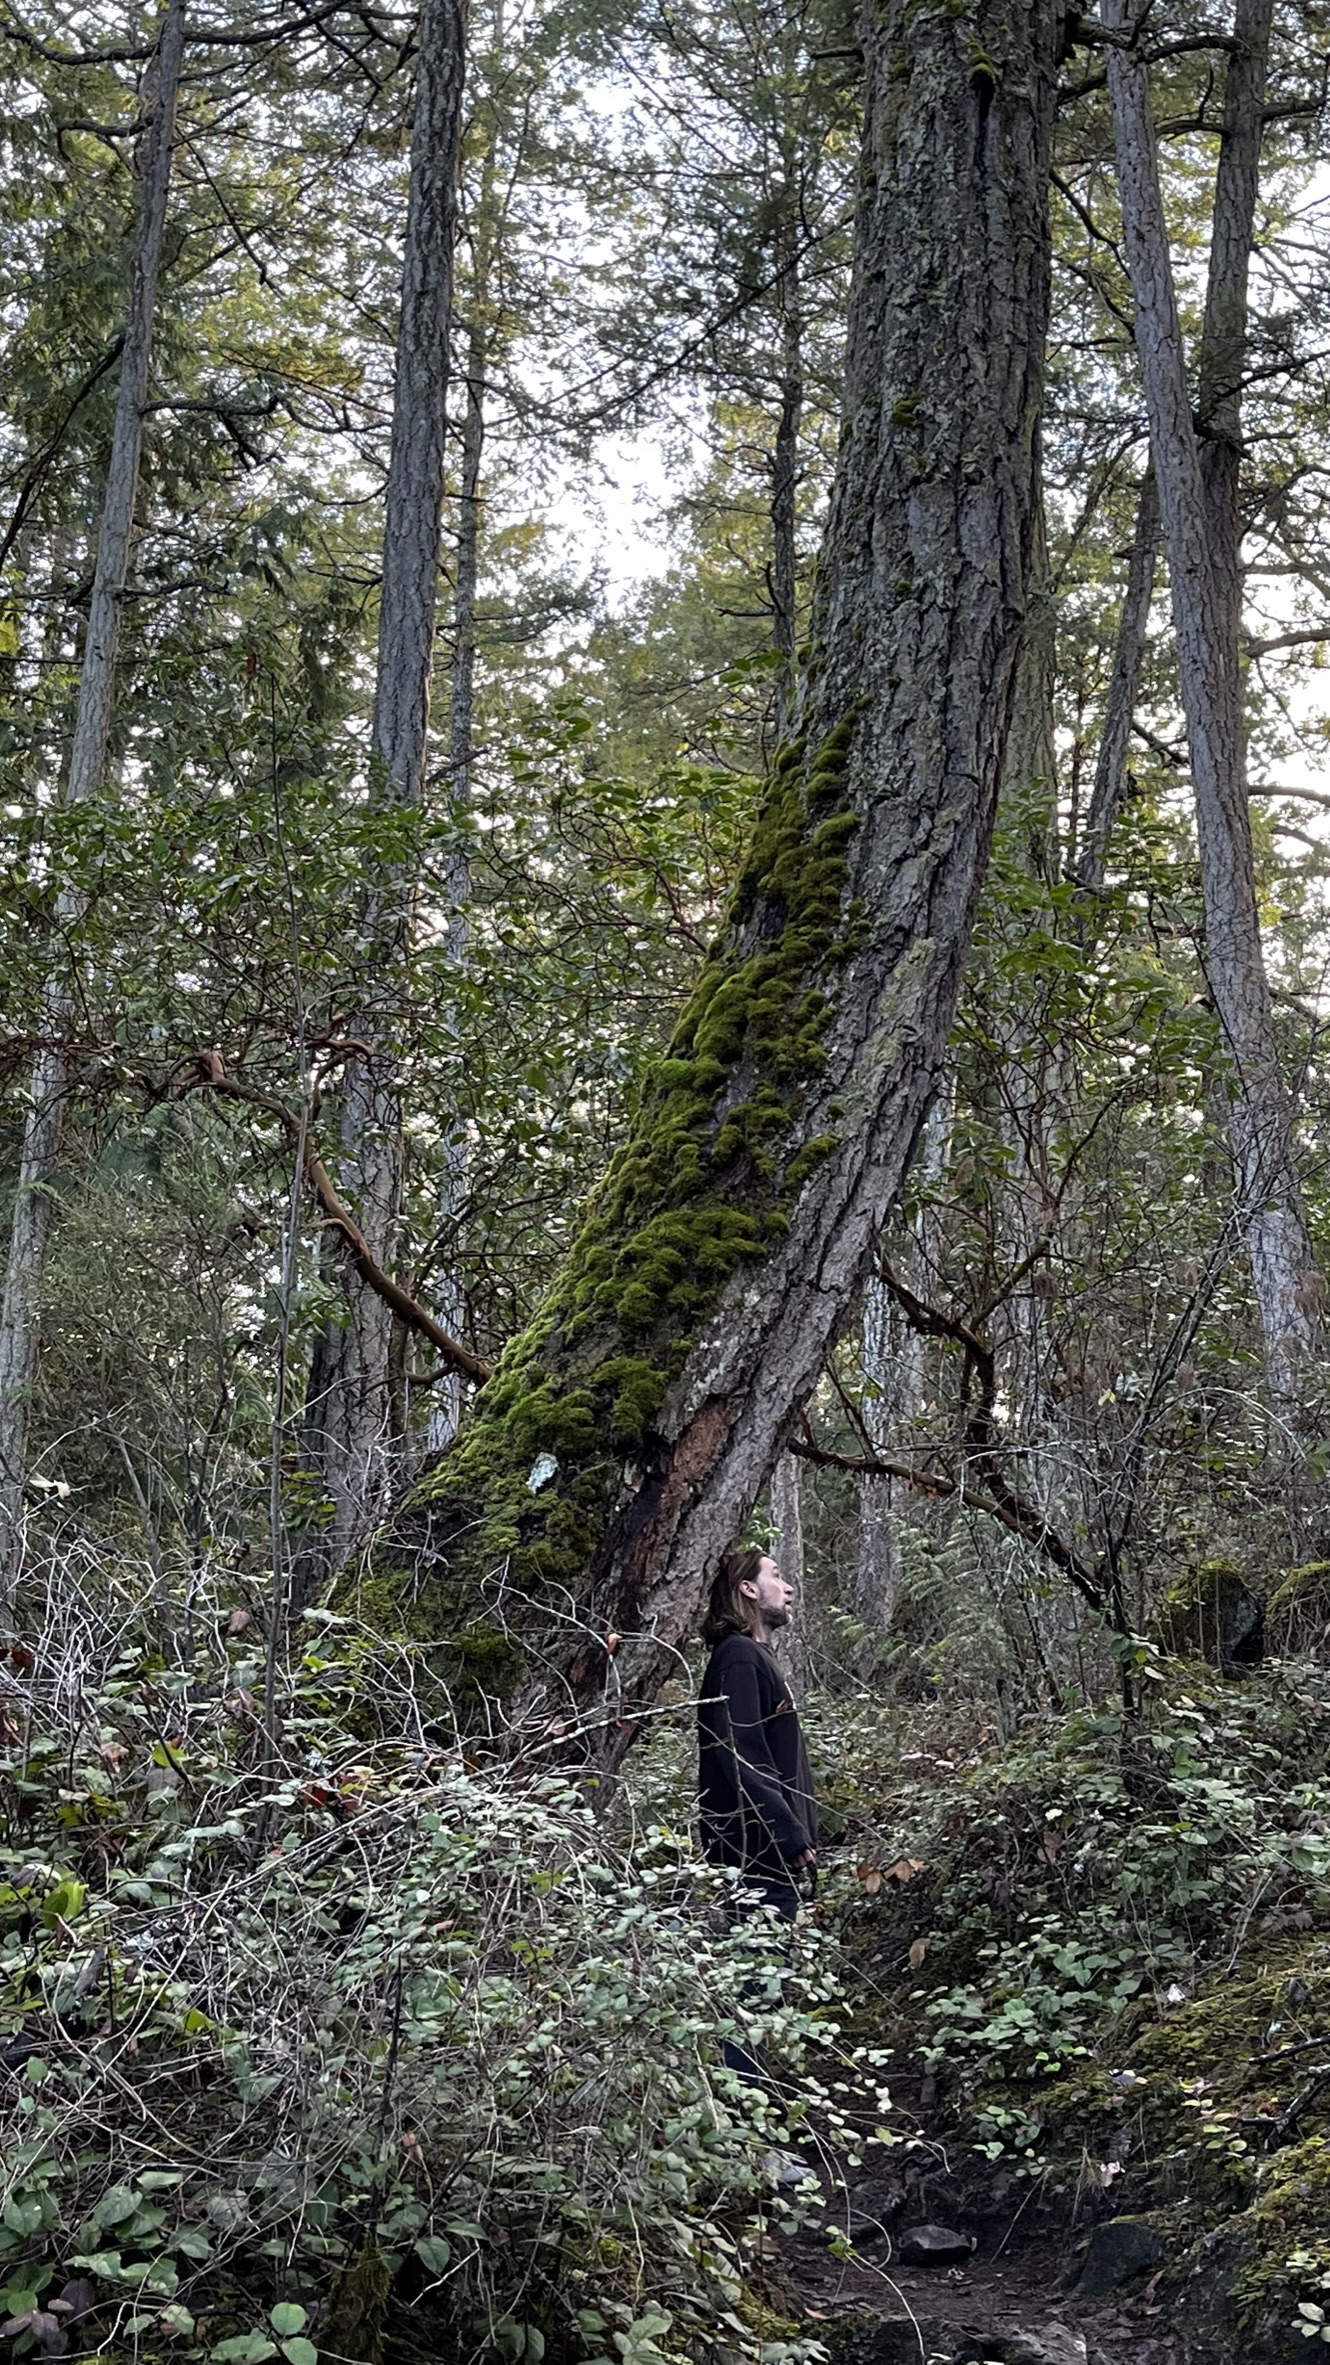 An old Coastal Douglas fir at Smuggler Cove Provincial Park.